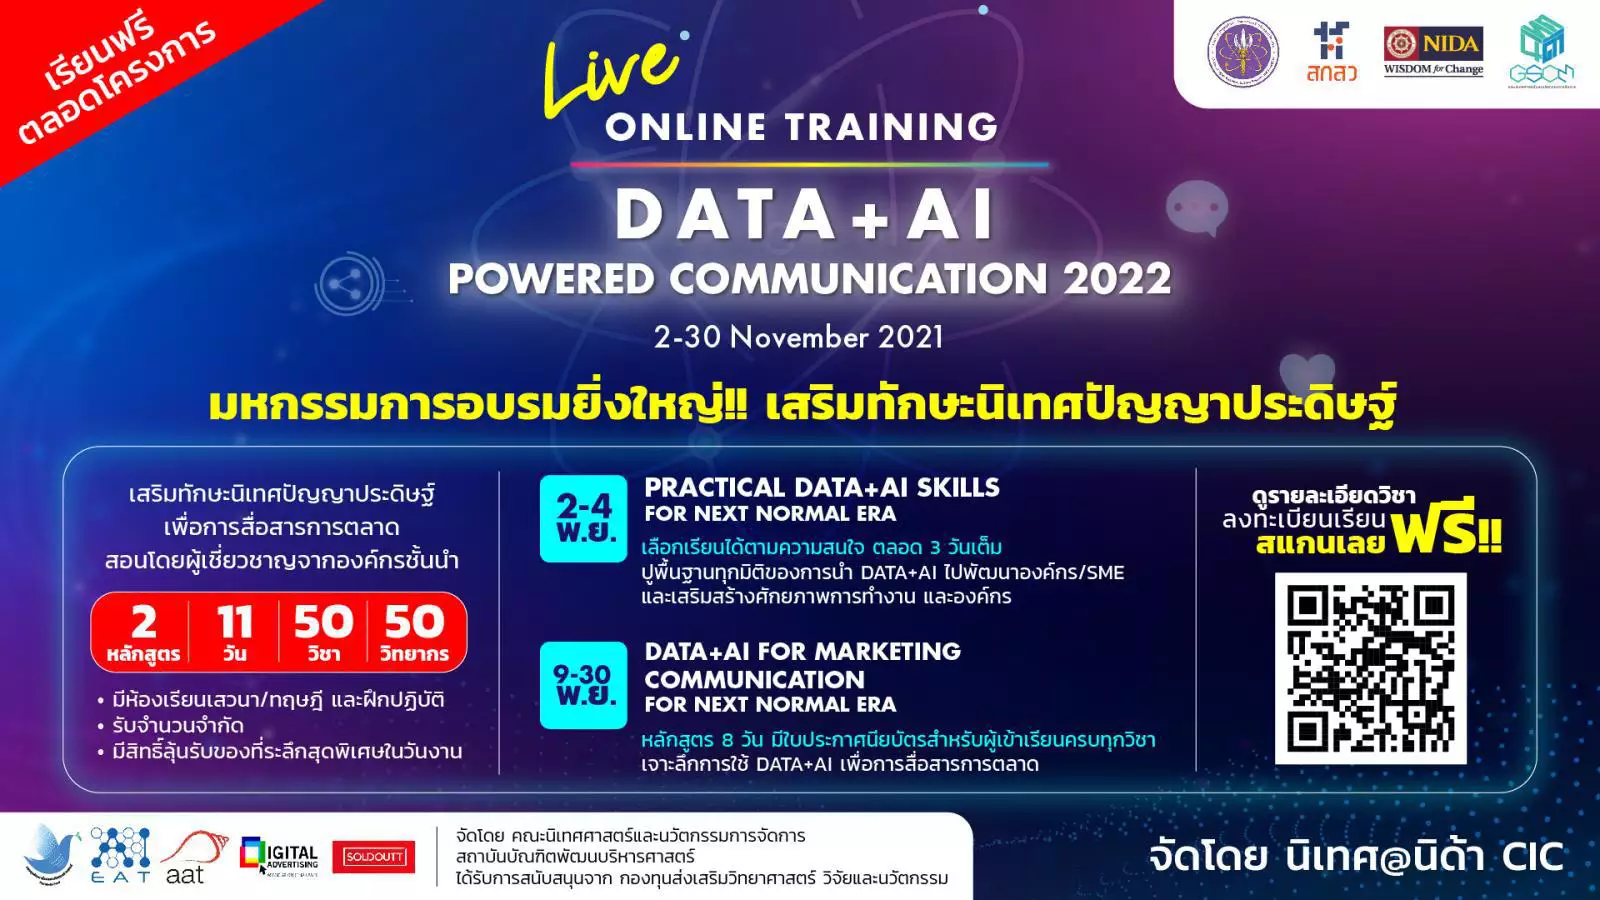 นิเทศนิด้า จับมือ อว. จัดอบรมออนไลน์ "DATA+AI Powered Communication 2022" ลงทะเบียนฟรี!! ไม่เสียค่าใช้จ่าย รับจำนวนจำกัด อบรม 2-30 พฤศจิกายนนี้